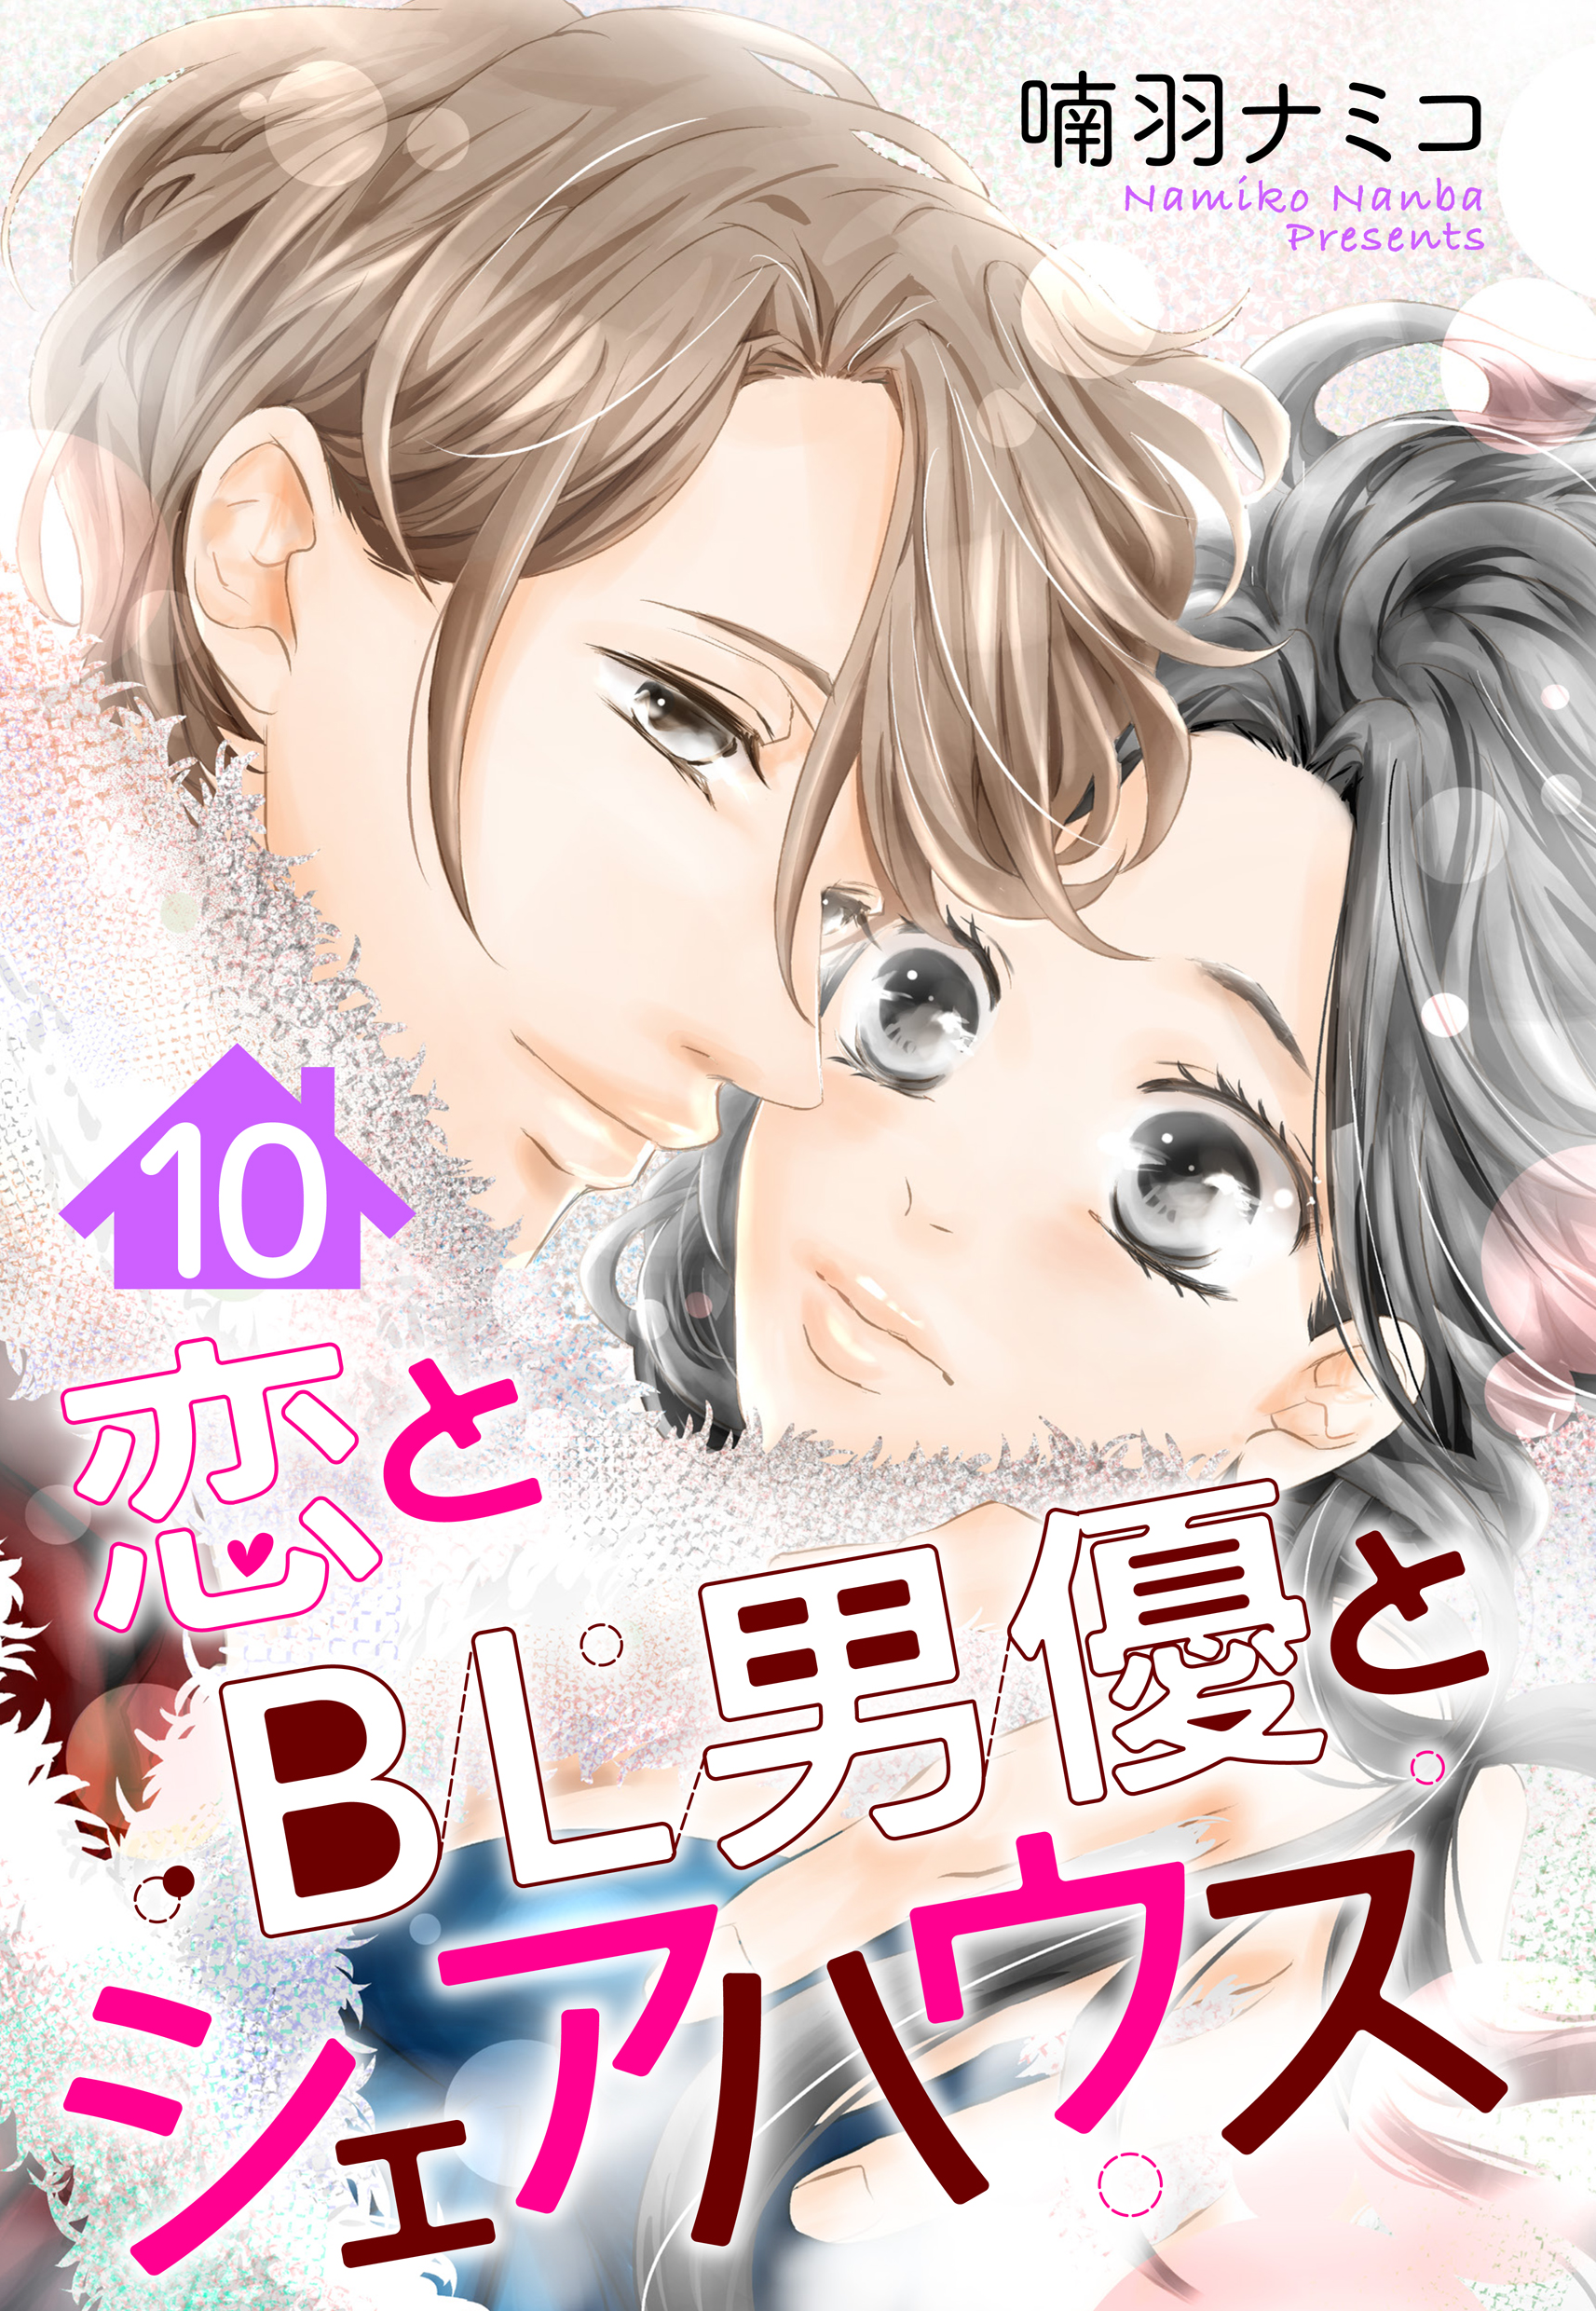 『【単話売】恋とBL男優とシェアハウス 10話』の漫画を無料で全巻読むには？